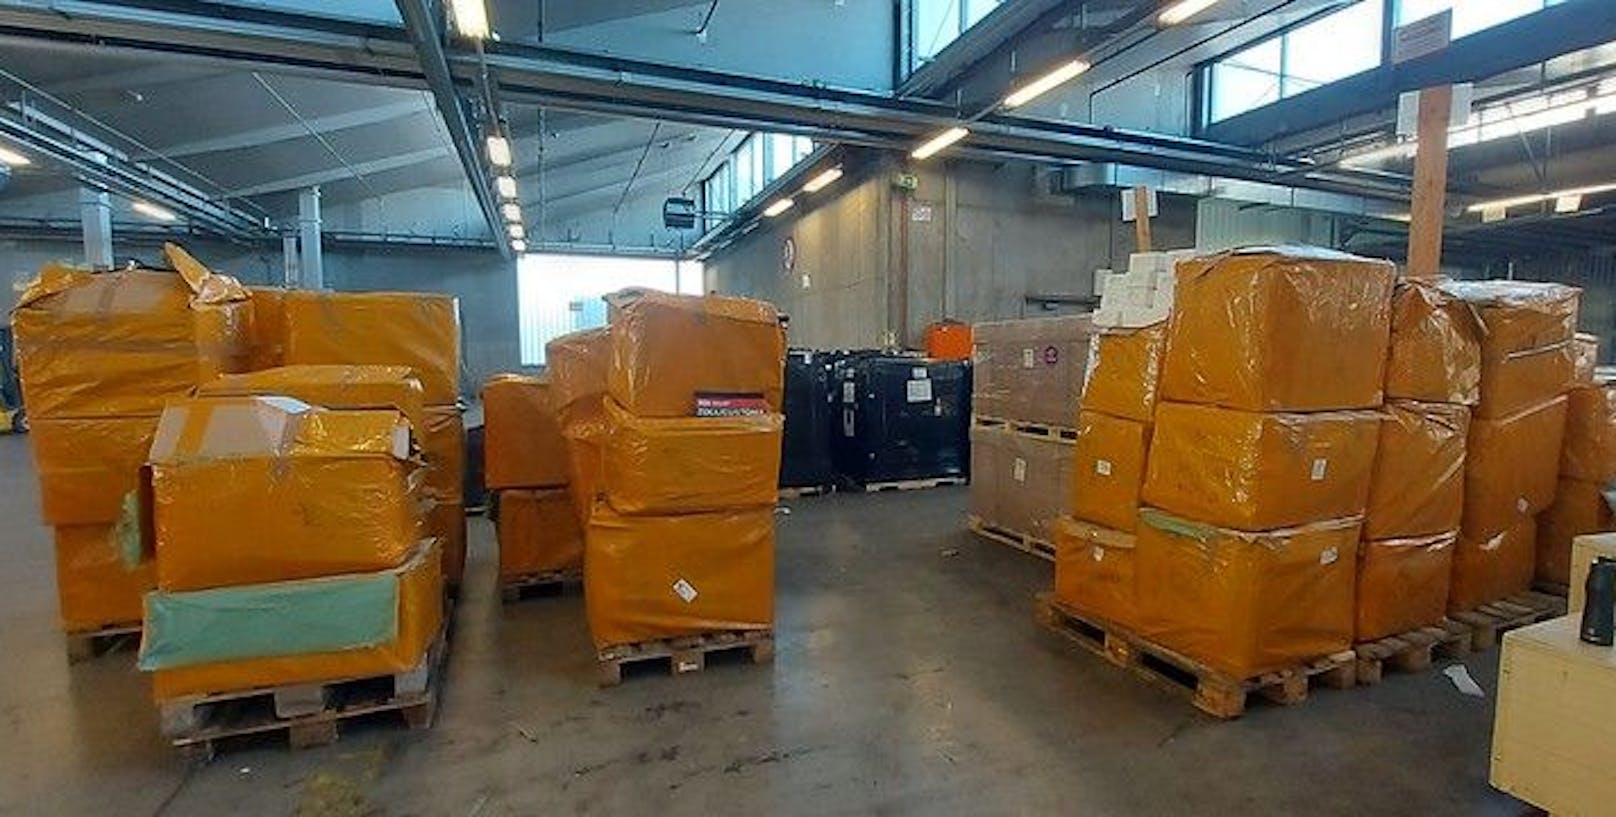 Der österreichische Zoll verhinderte beim Großaufgriff die illegale Einfuhr von 53 Kartons mit knapp 7.000 Fake-Produkten.